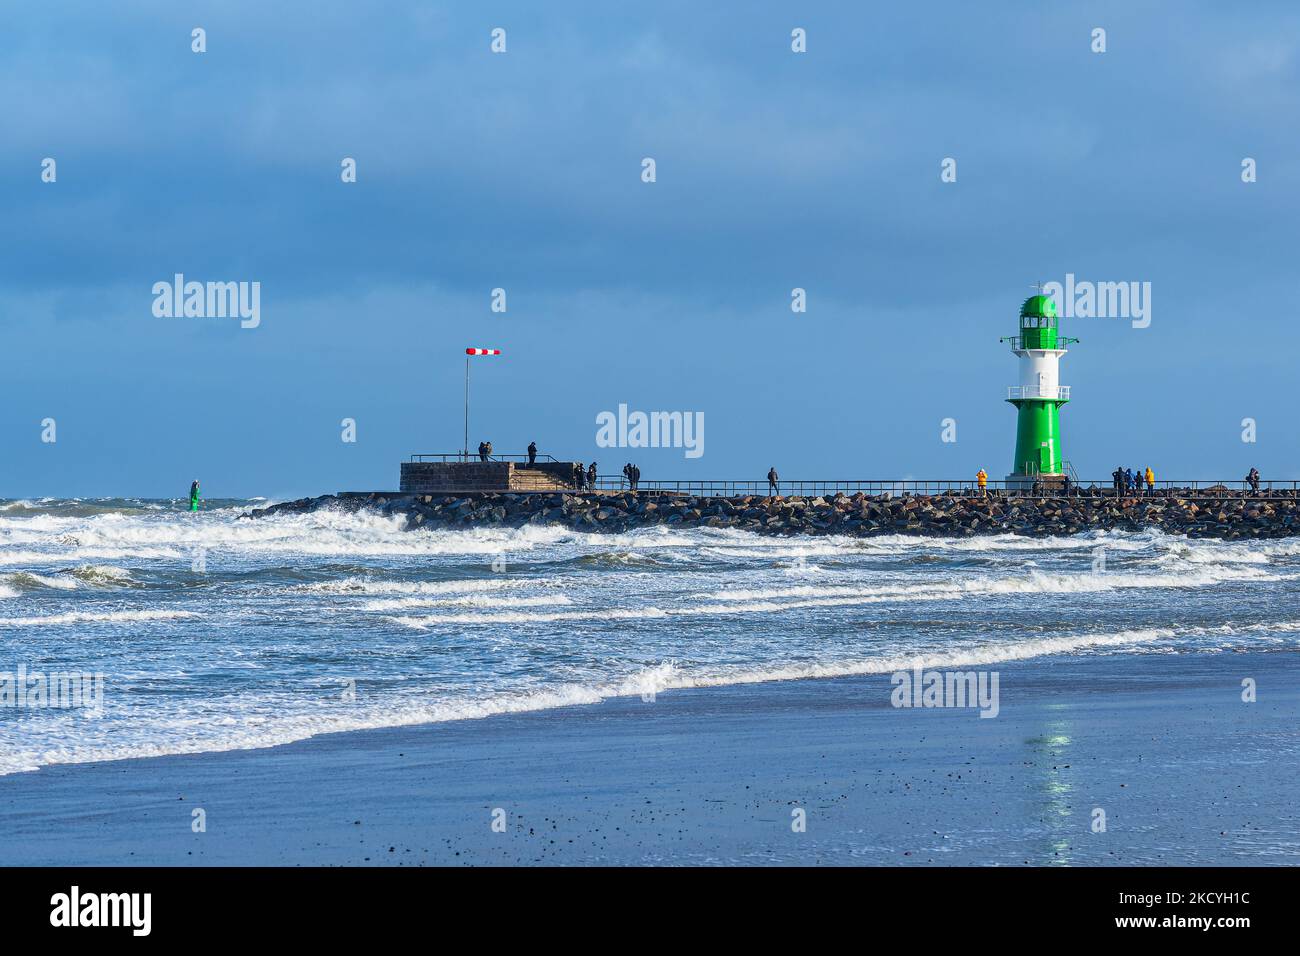 Mole sur les rives de la mer Baltique pendant la tempête Eunice à Warnemuende, Allemagne. Banque D'Images